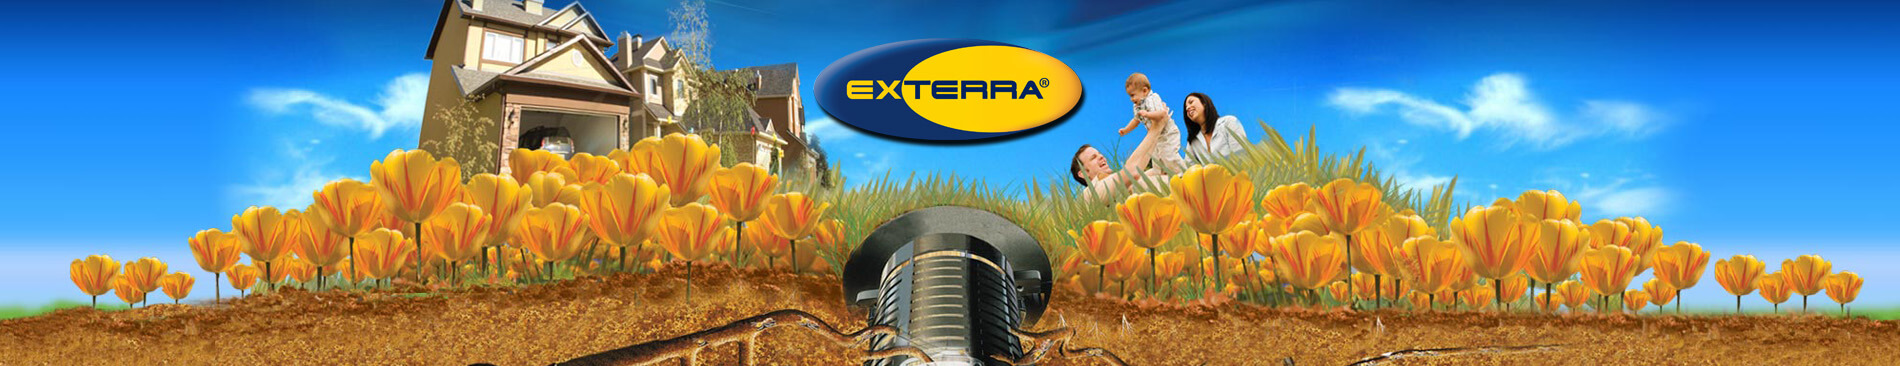 Exterra Termite Control in Caseyville IL